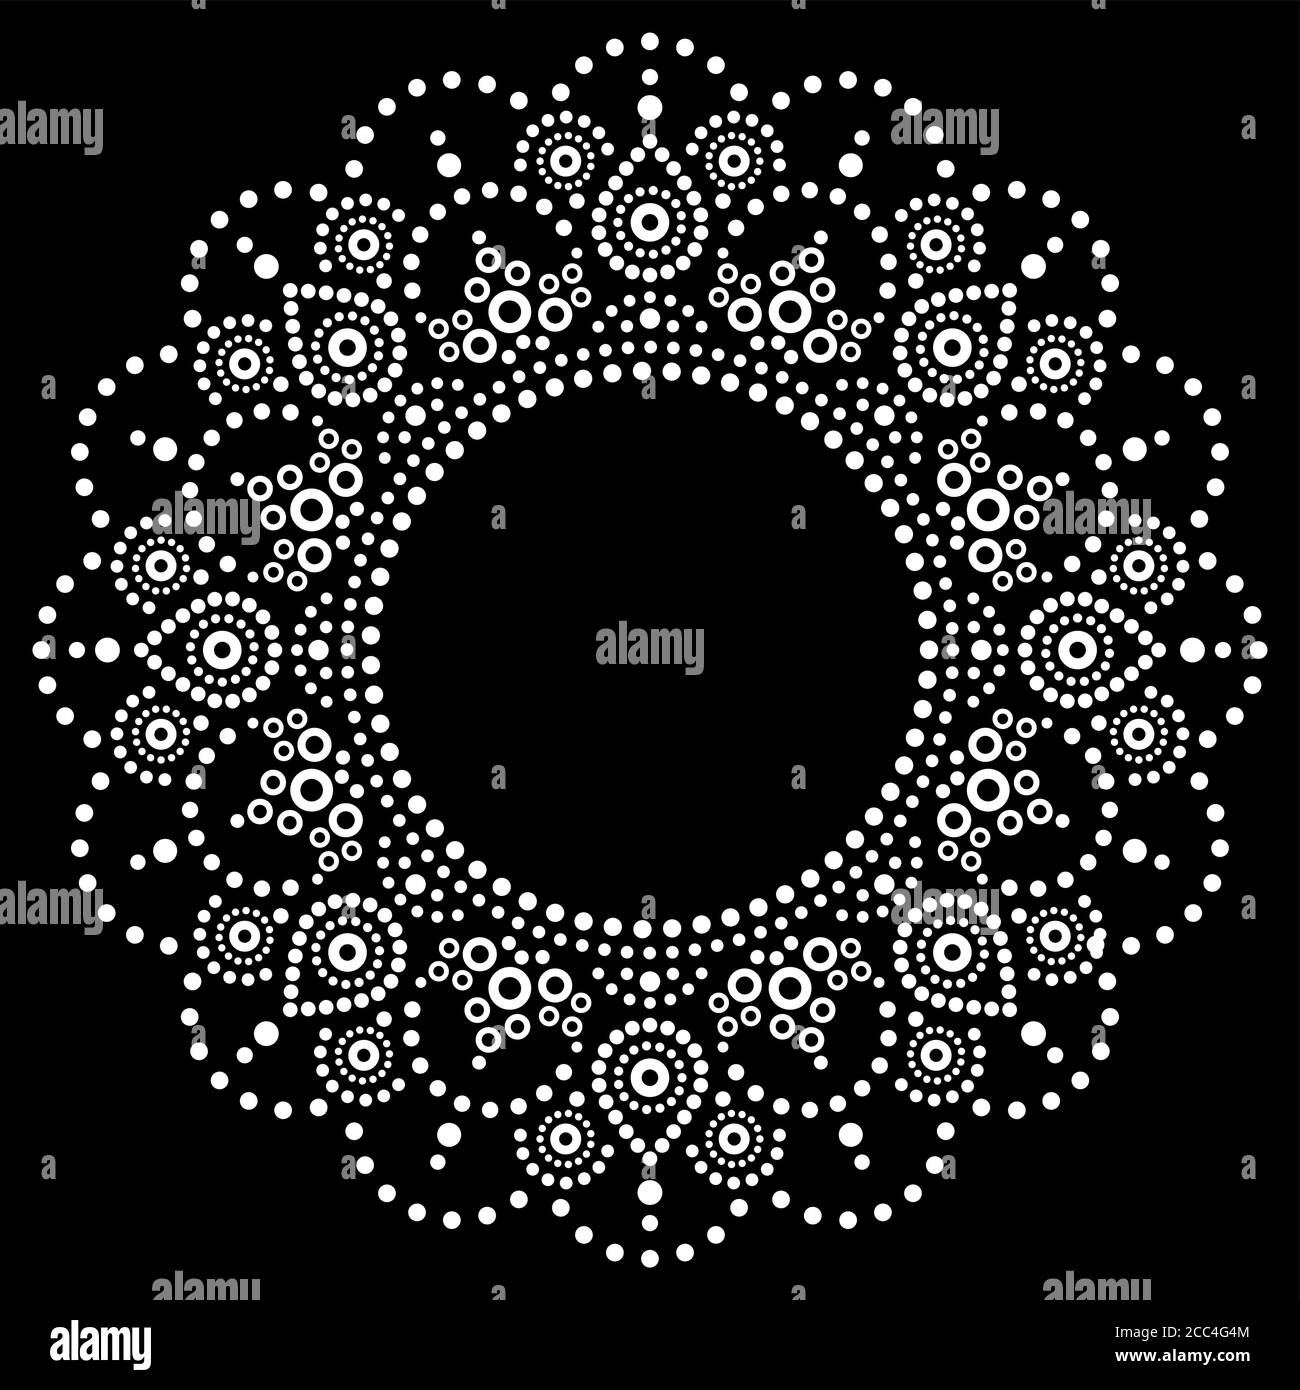 Mandala Aboriginal Dot Painting Tribal Vektor Design, Boho Stil Australian Dot Art Muster in weiß auf schwarz Stock Vektor